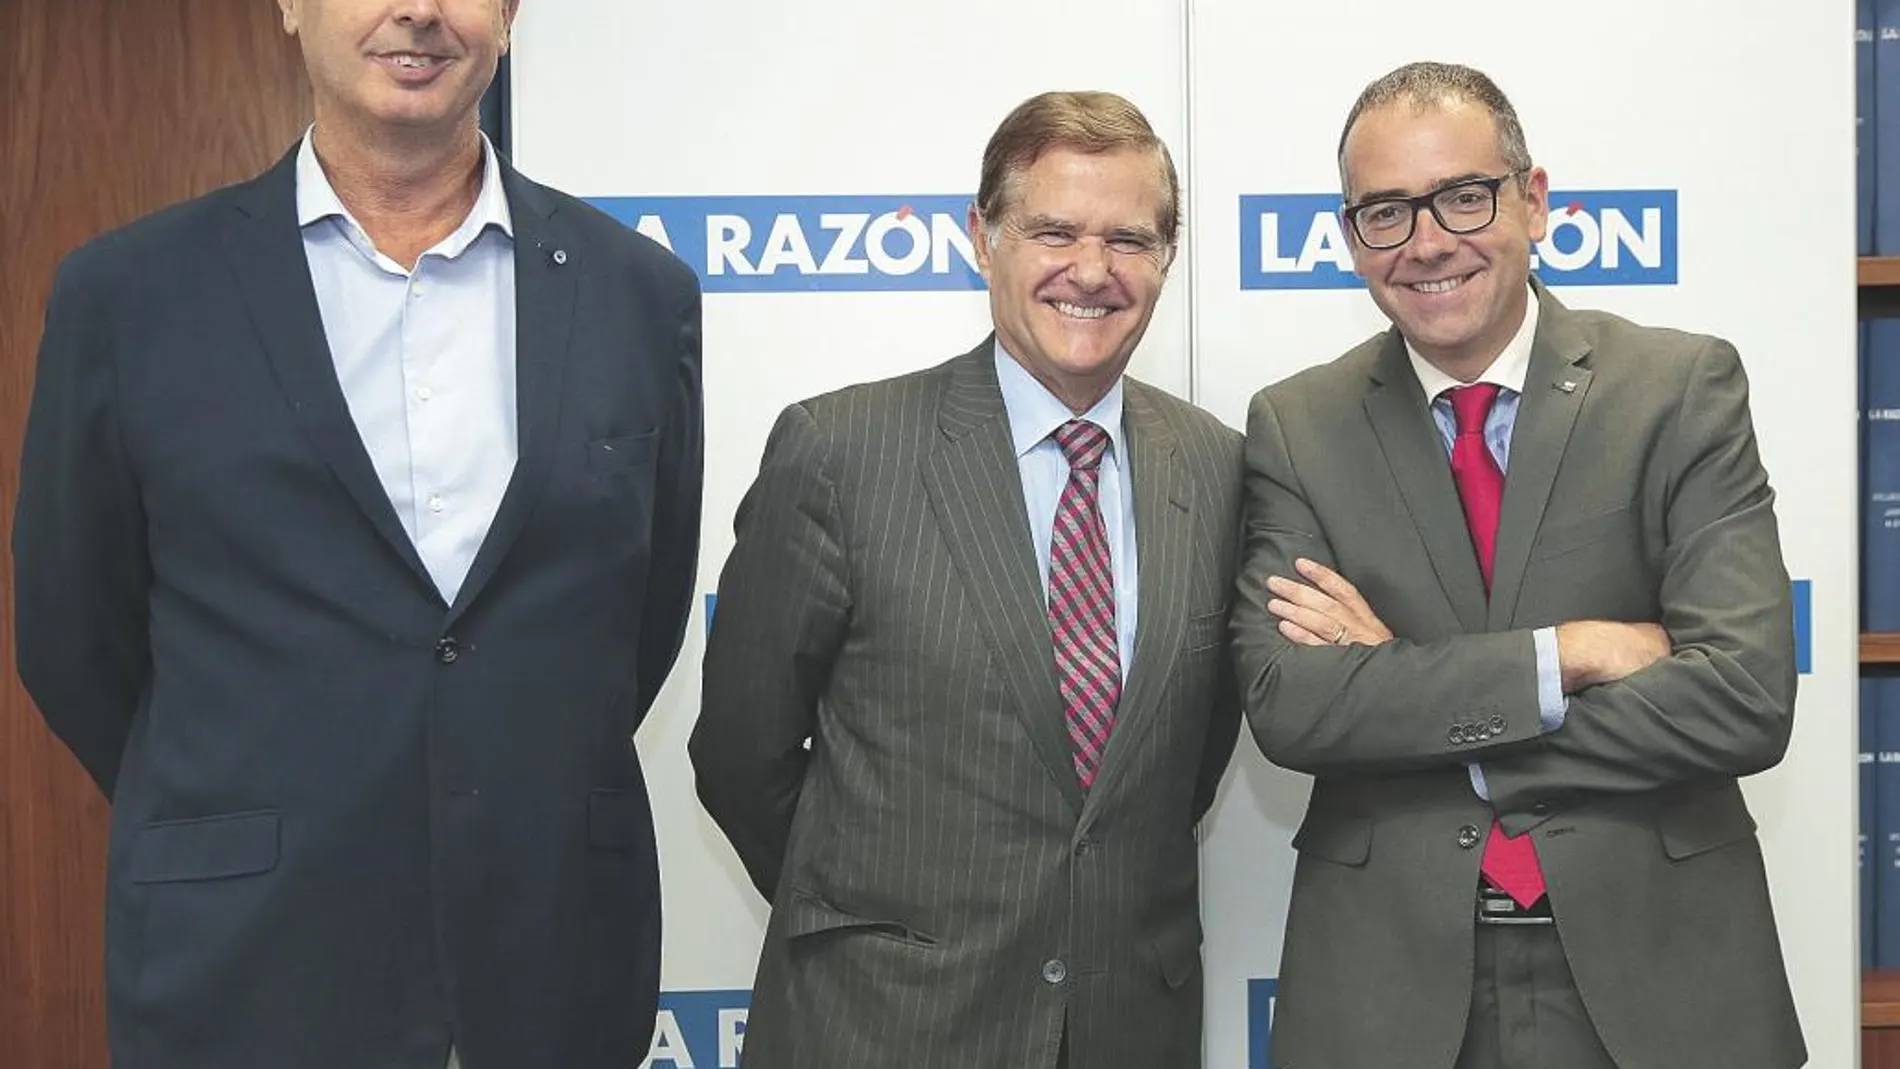 De izquierda a derecha, Joaquín Carrasco, Manuel Lage y Antonio Calvo